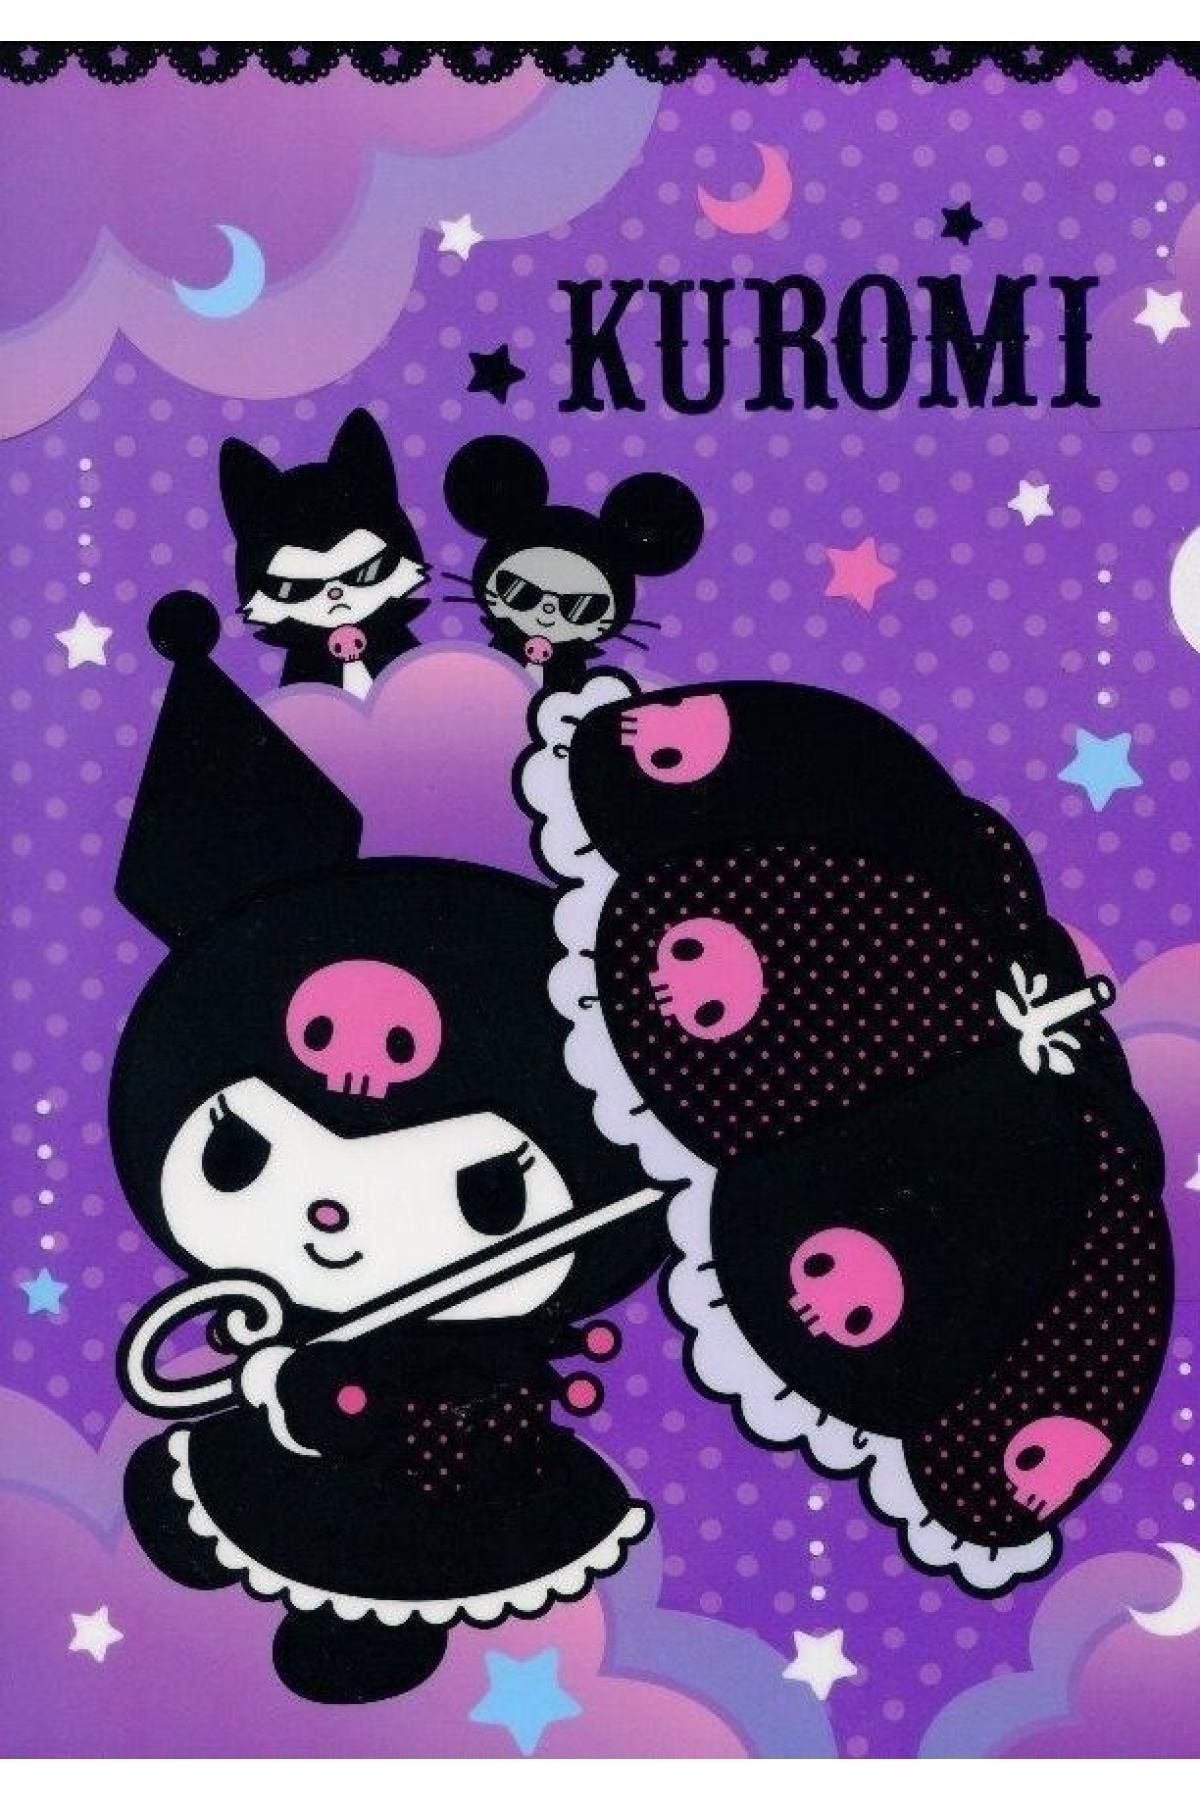 Куроми на английском. Инди КИД Kuromi. Постер Куроми и май Мелоди. Плакат с Куроми и май Мелоди. Китти Kuromi.